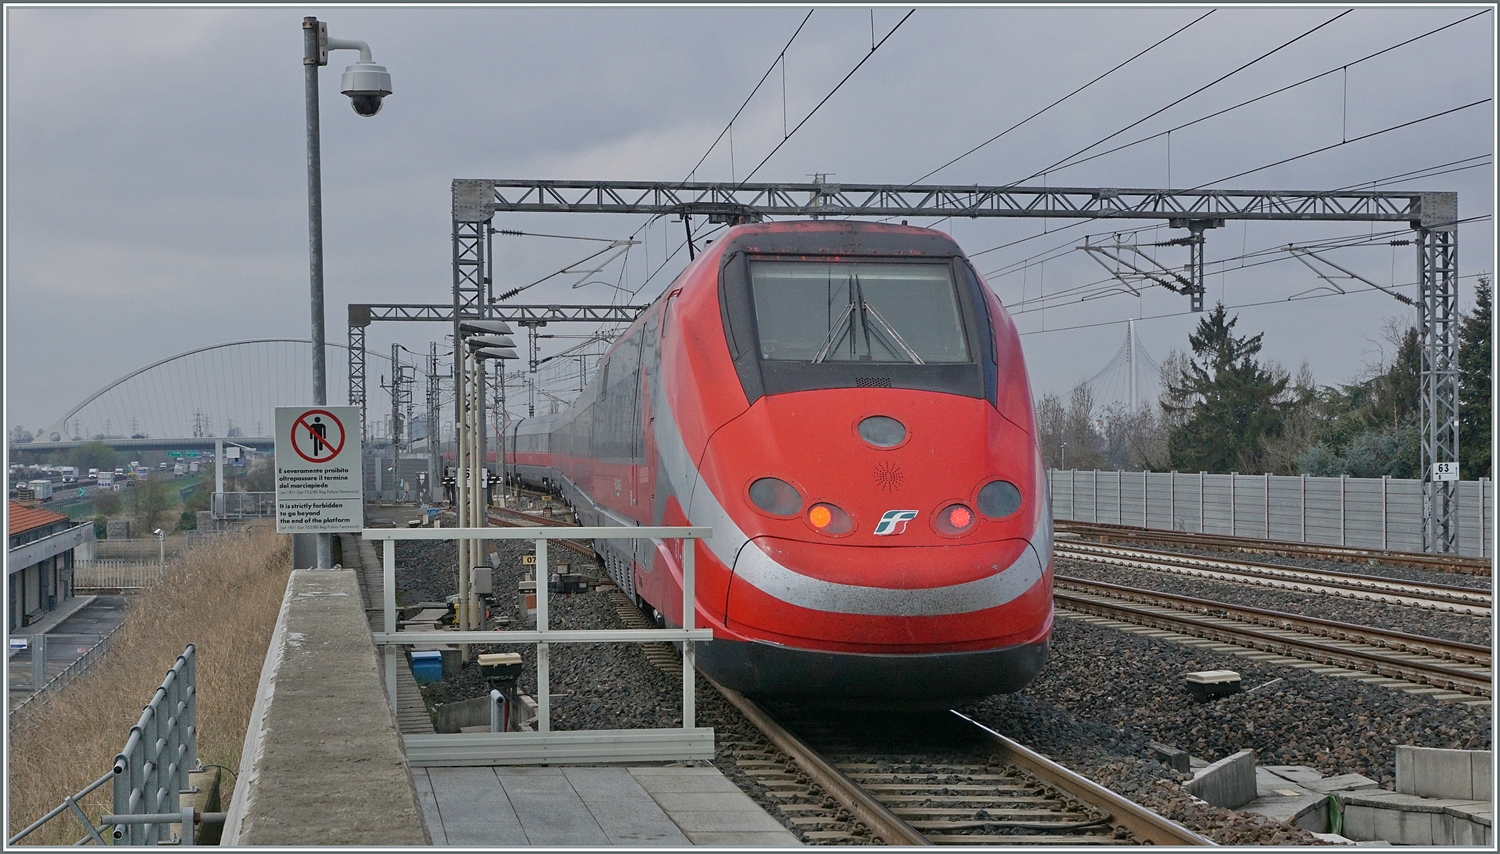 Nach einem kurzen Aufenthalt verlässt der FS Treniatlia ETR 500 037 Reggio Emilia AV in Richtung Milano. 

14. März 2023